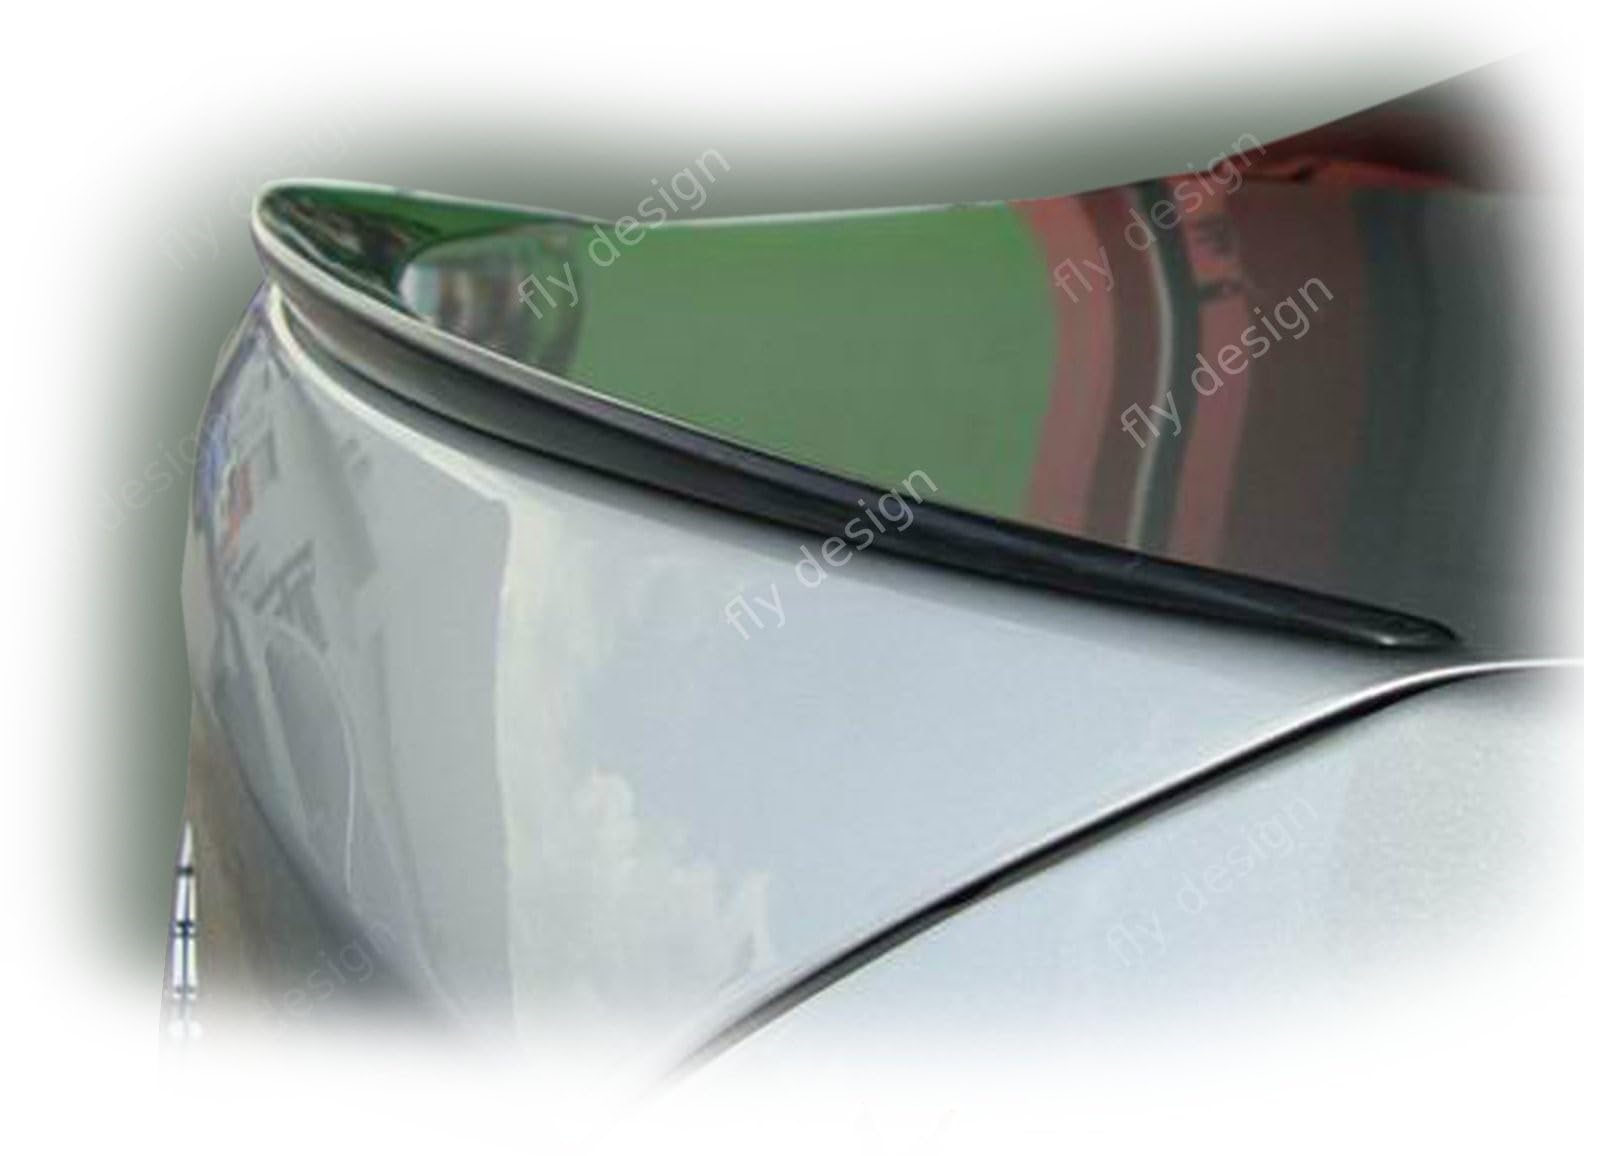 FLY DESIGN 70098 Heckspoiler passend für BMW 5er F10 Sedan Limo, Heckflügel, Spoilerlippe für Auto-Tuning, ABS Kunststoff, Saphirschwarz 475 lackiert von FLY DESIGN